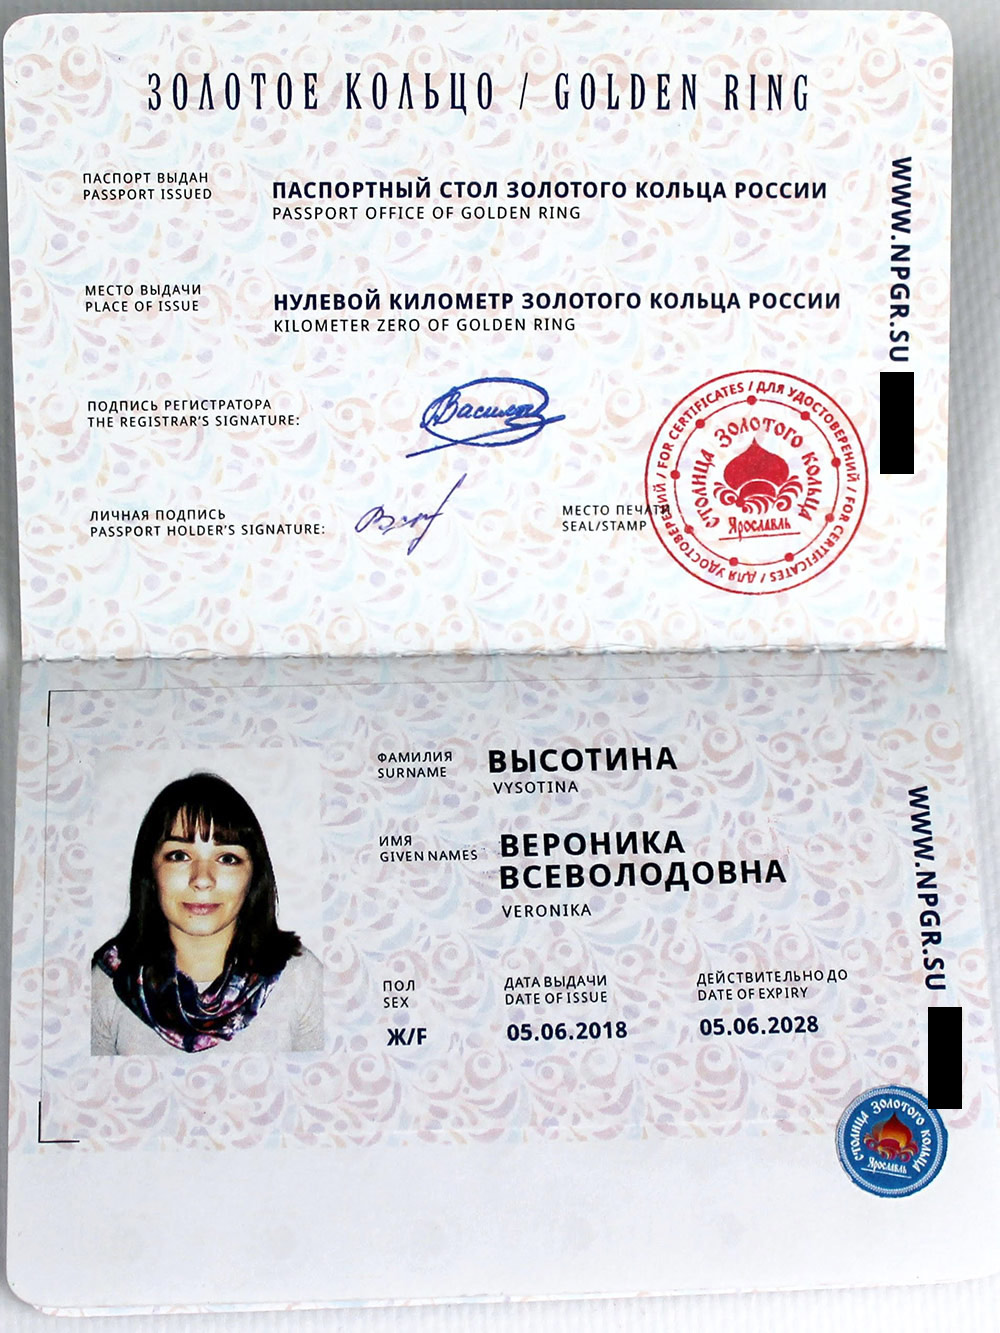 Паспорт туриста похож на обычный российский паспорт